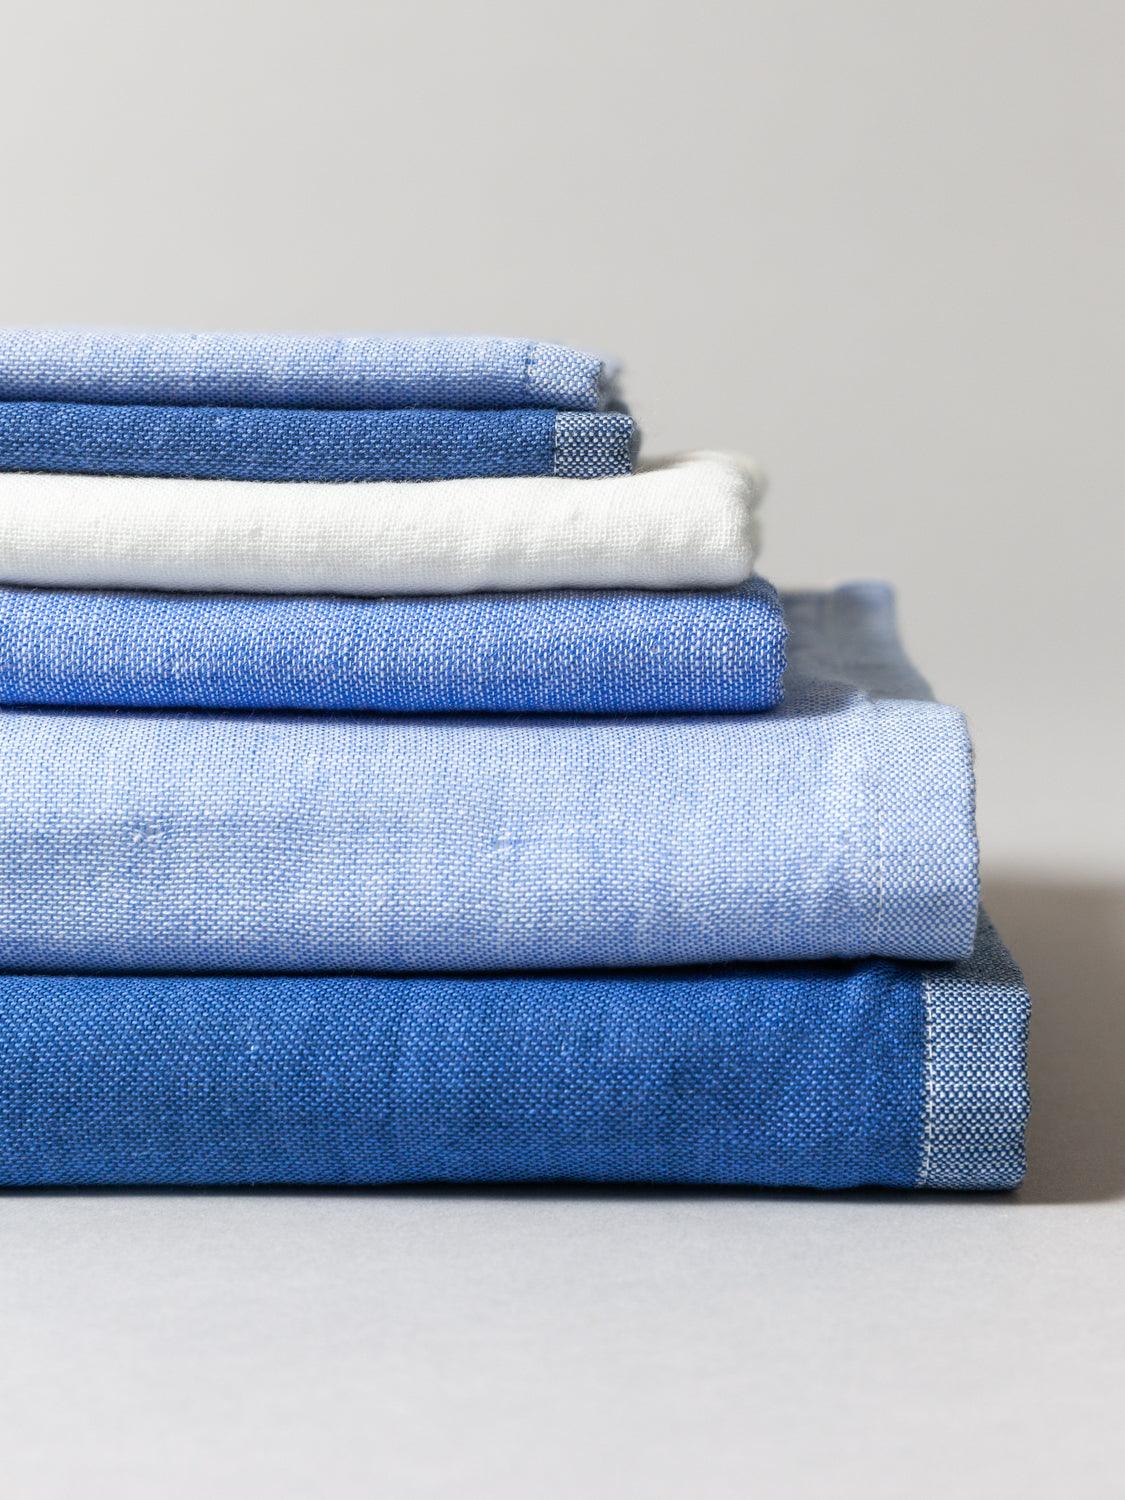 Chambray Towel, Blue Two-Tone 1 | MORIHATA